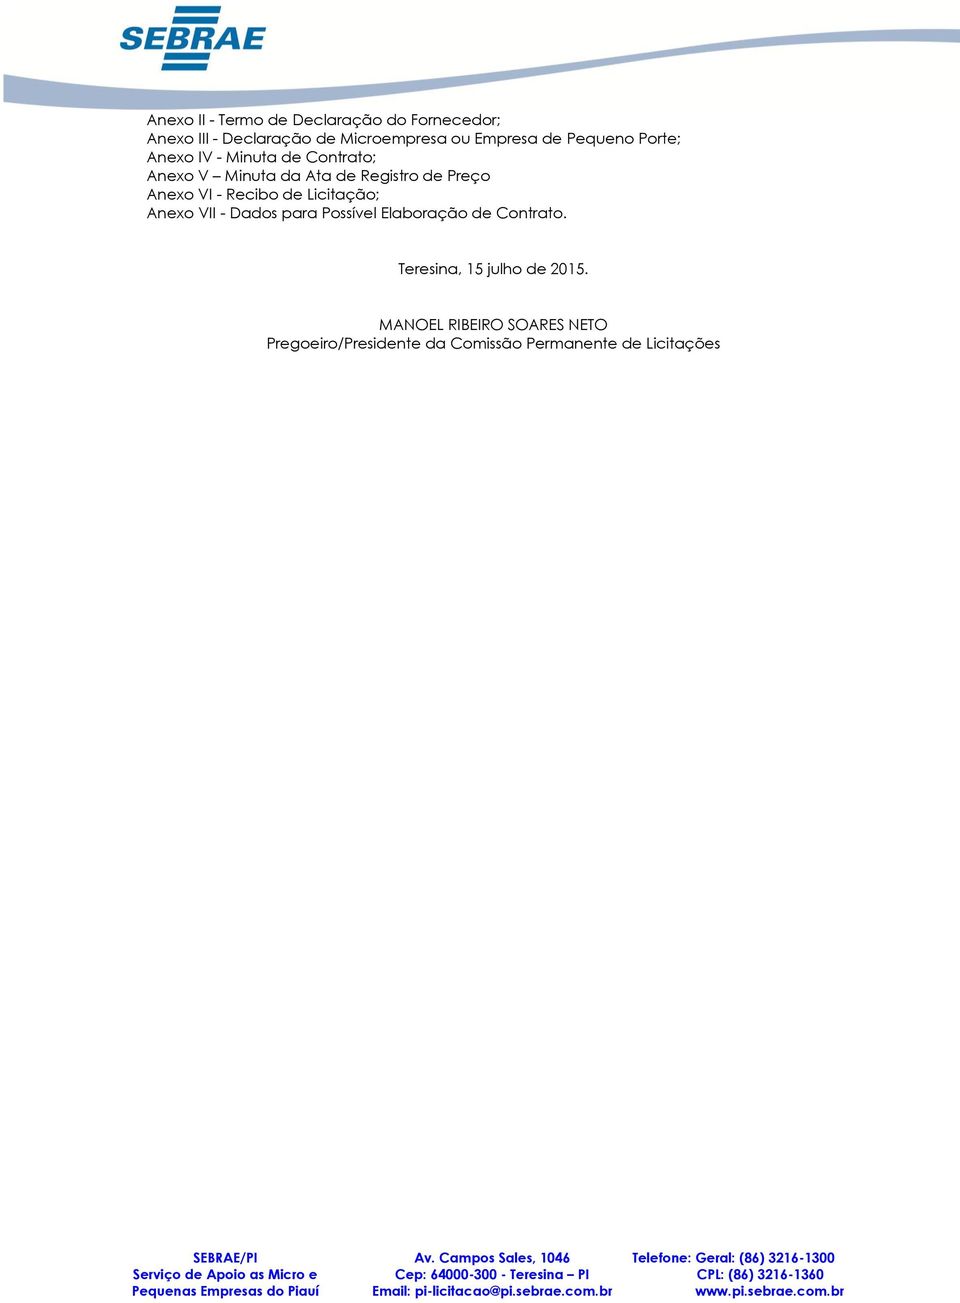 Anexo VII - Dados para Possível Elaboração de Contrato. Teresina, 15 julho de 2015.